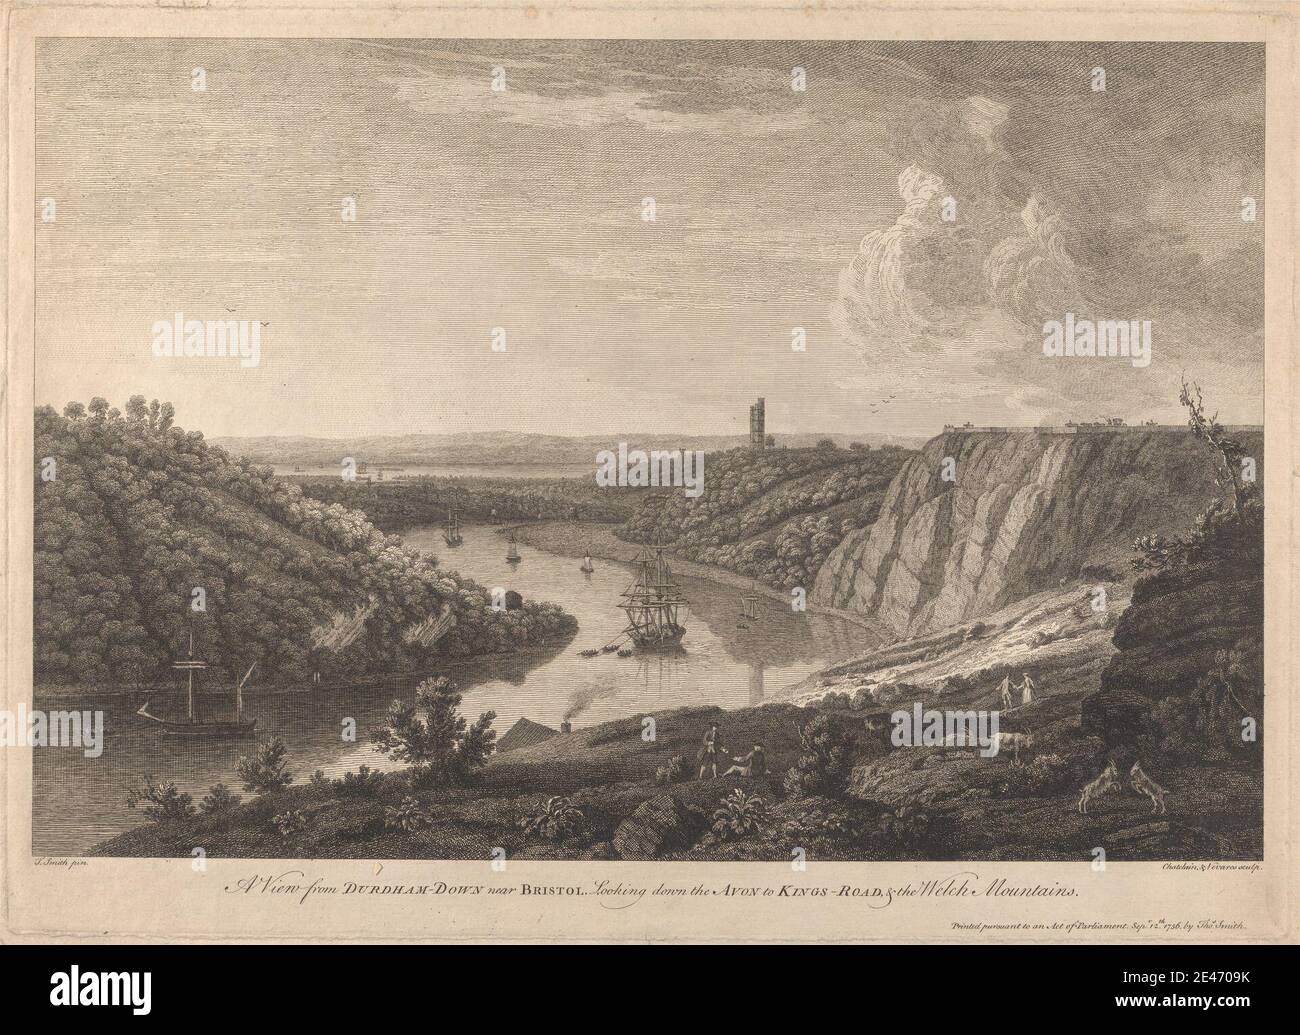 Jean B. C. Chatelain, 1710–1771, français, UNE vue de Durdham-Down près de Bristol, en descendant l'Avon, 1756. Gravure. Bateaux , falaises , collines , paysage , rivière. Avon , Bristol , Angleterre , Royaume-Uni Banque D'Images